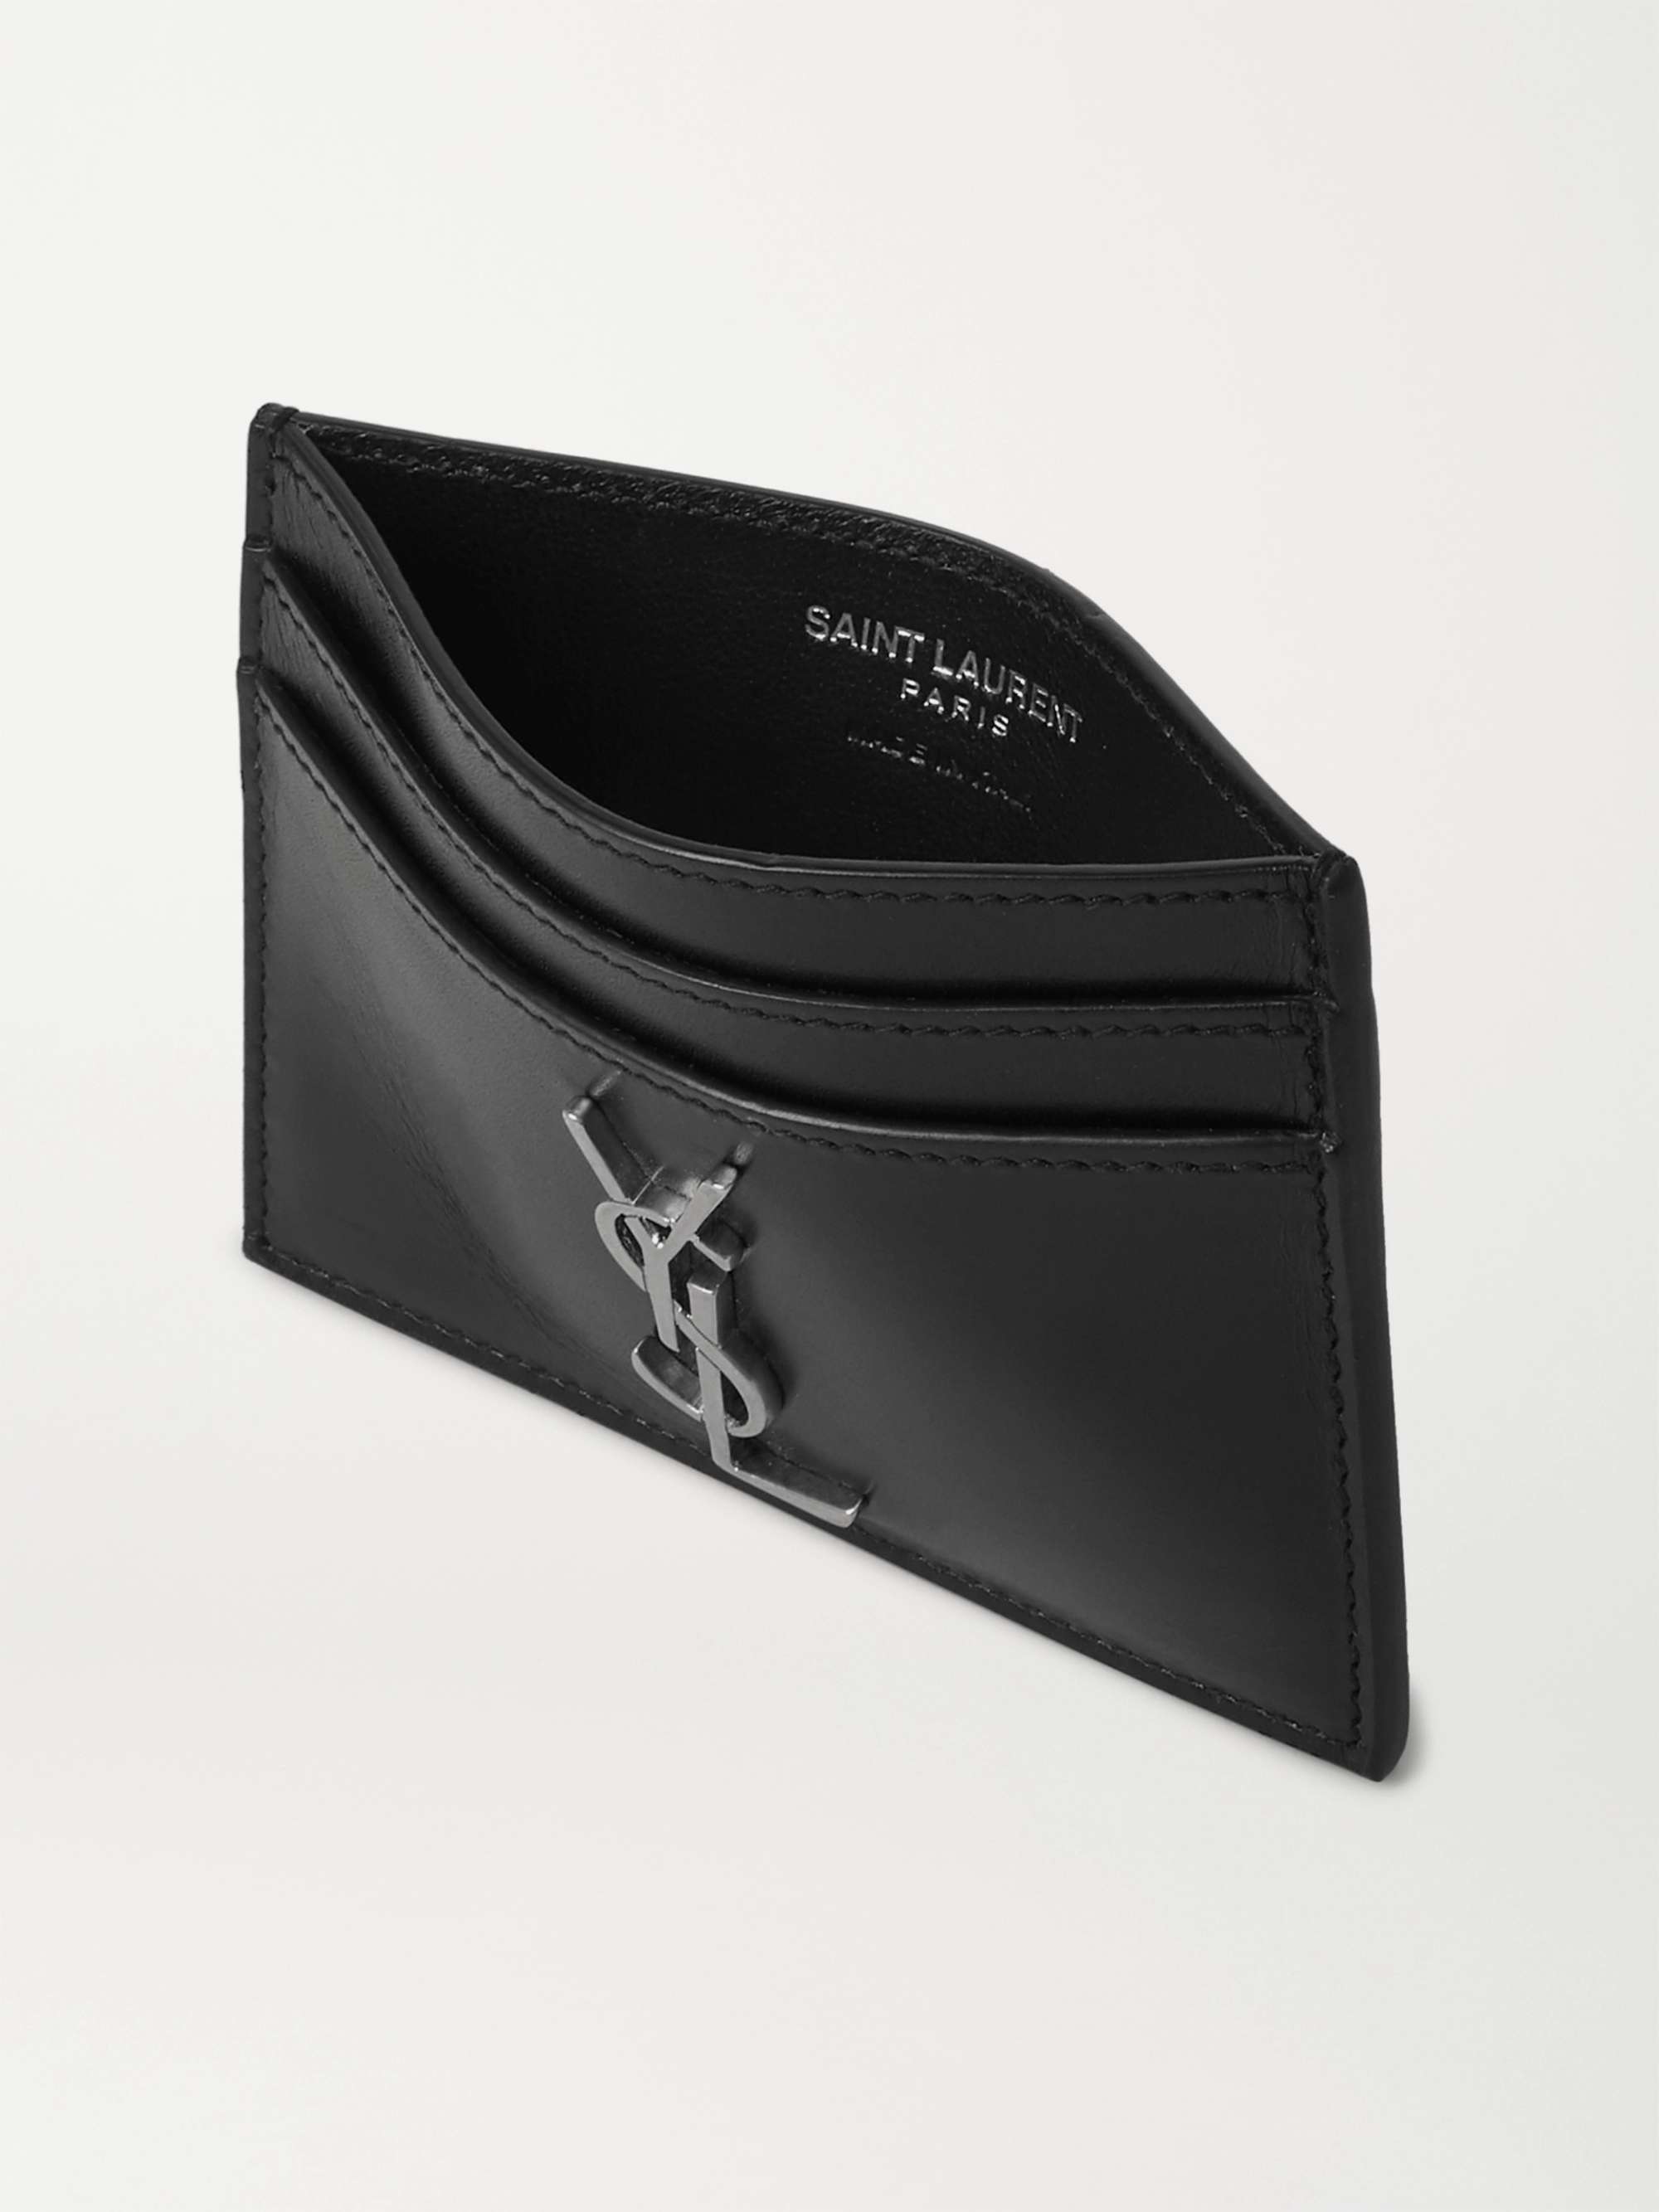 SAINT LAURENT Logo-Appliquéd Leather Cardholder